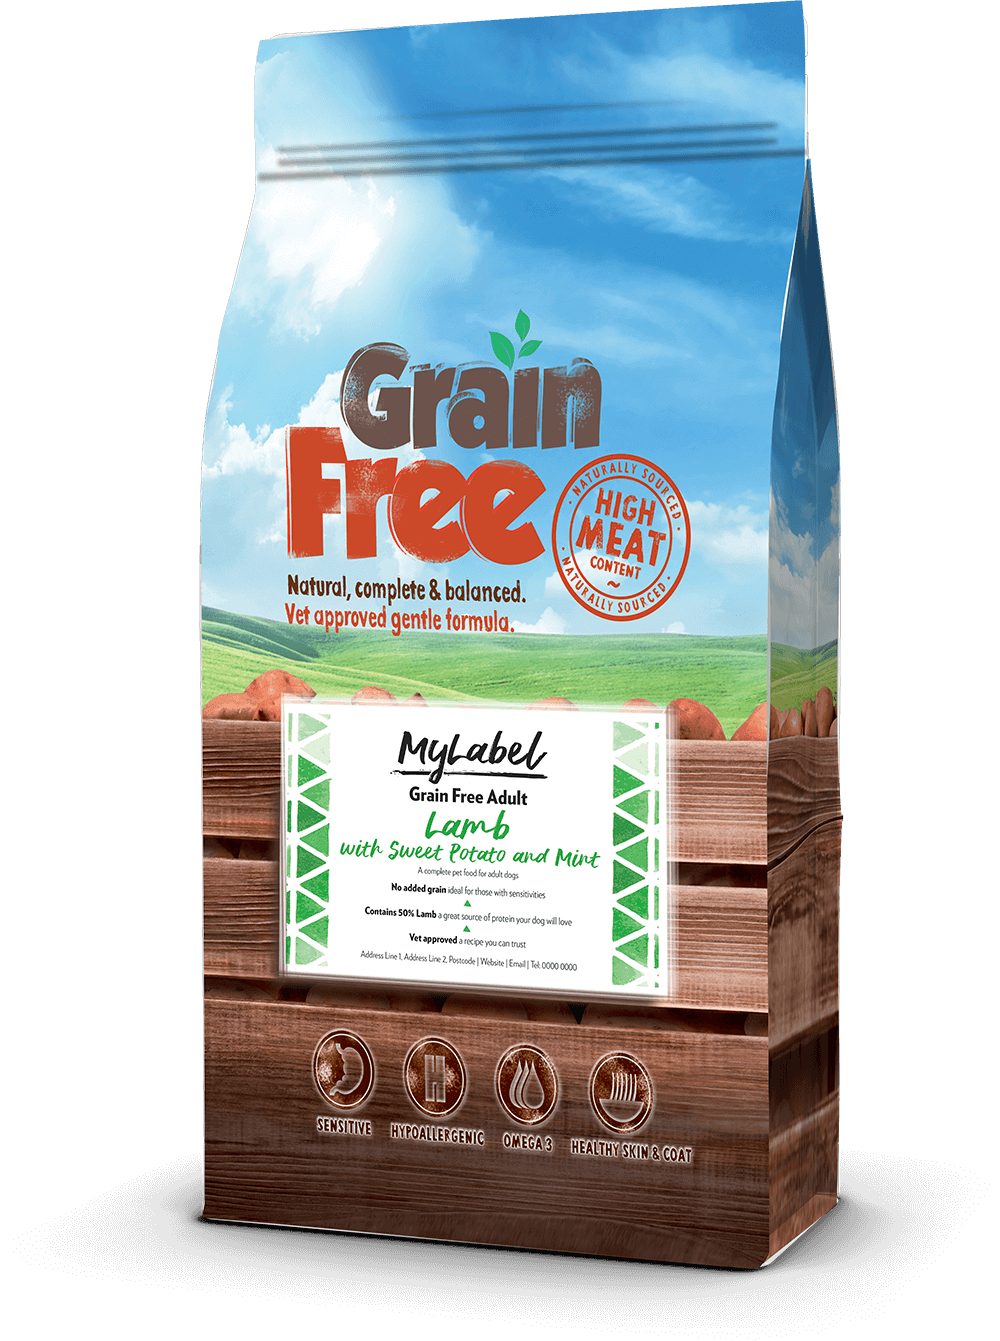 A Grain Free állateledel termékcsalád a legkiválóbb, frissen elkészített, tápláló és jól emészthető állati fehérjeforrásokat tartalmazza, amelyek macskák és kutyák számára egyaránt tökéletesek.